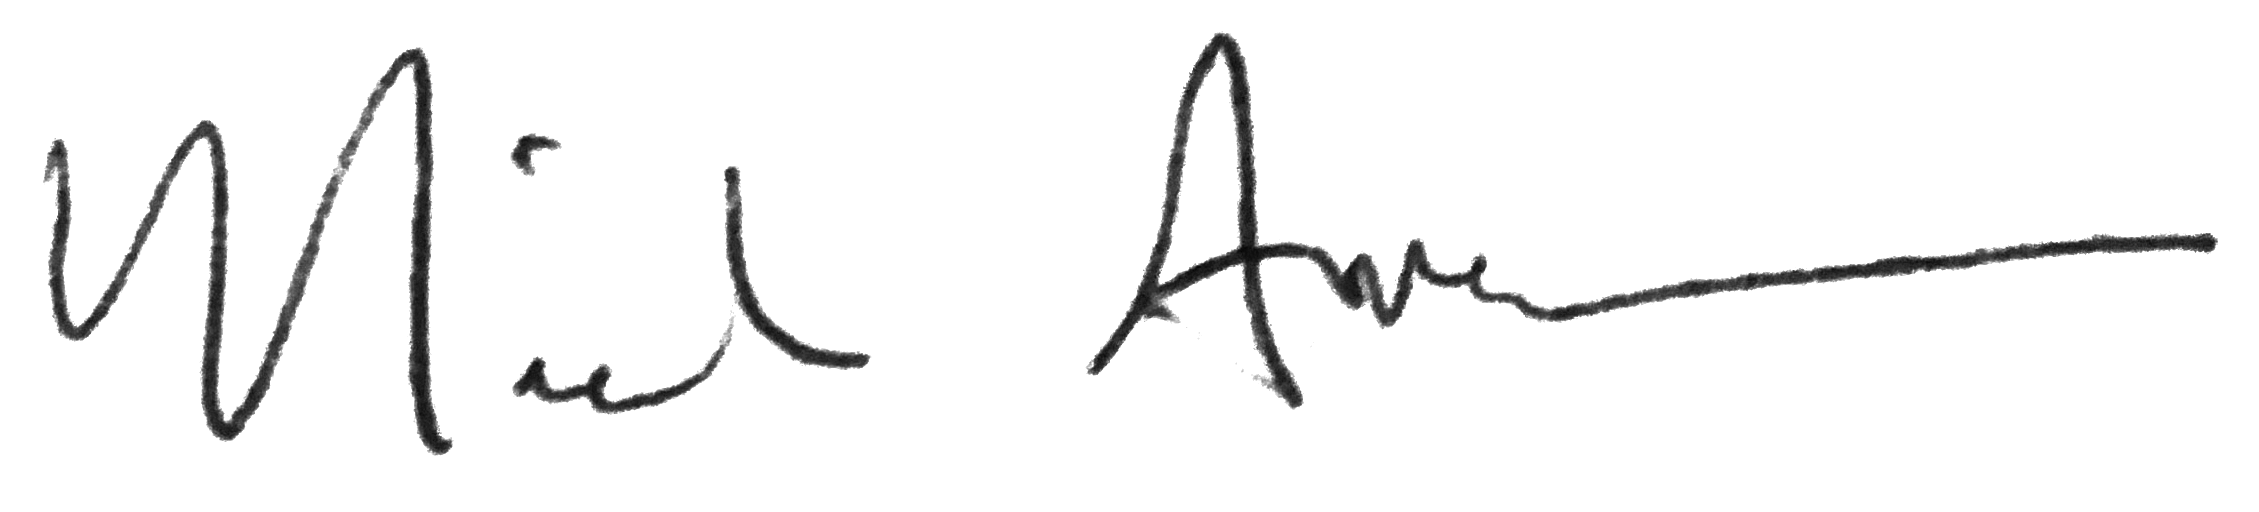 Nicole Anderson handwritten signature